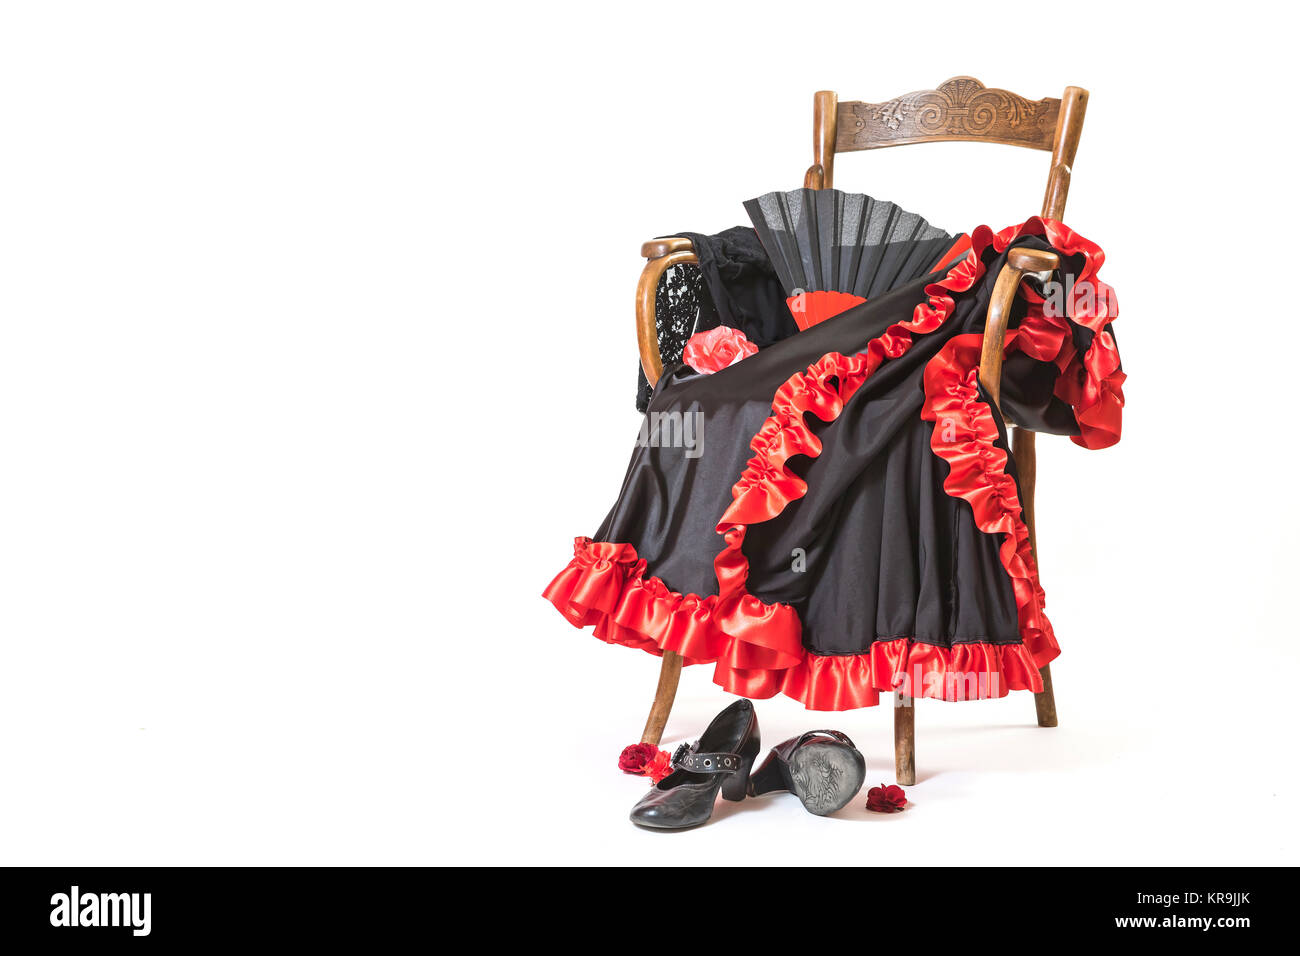 Les vêtements et chaussures flamenco sur une chaise en bois Banque D'Images